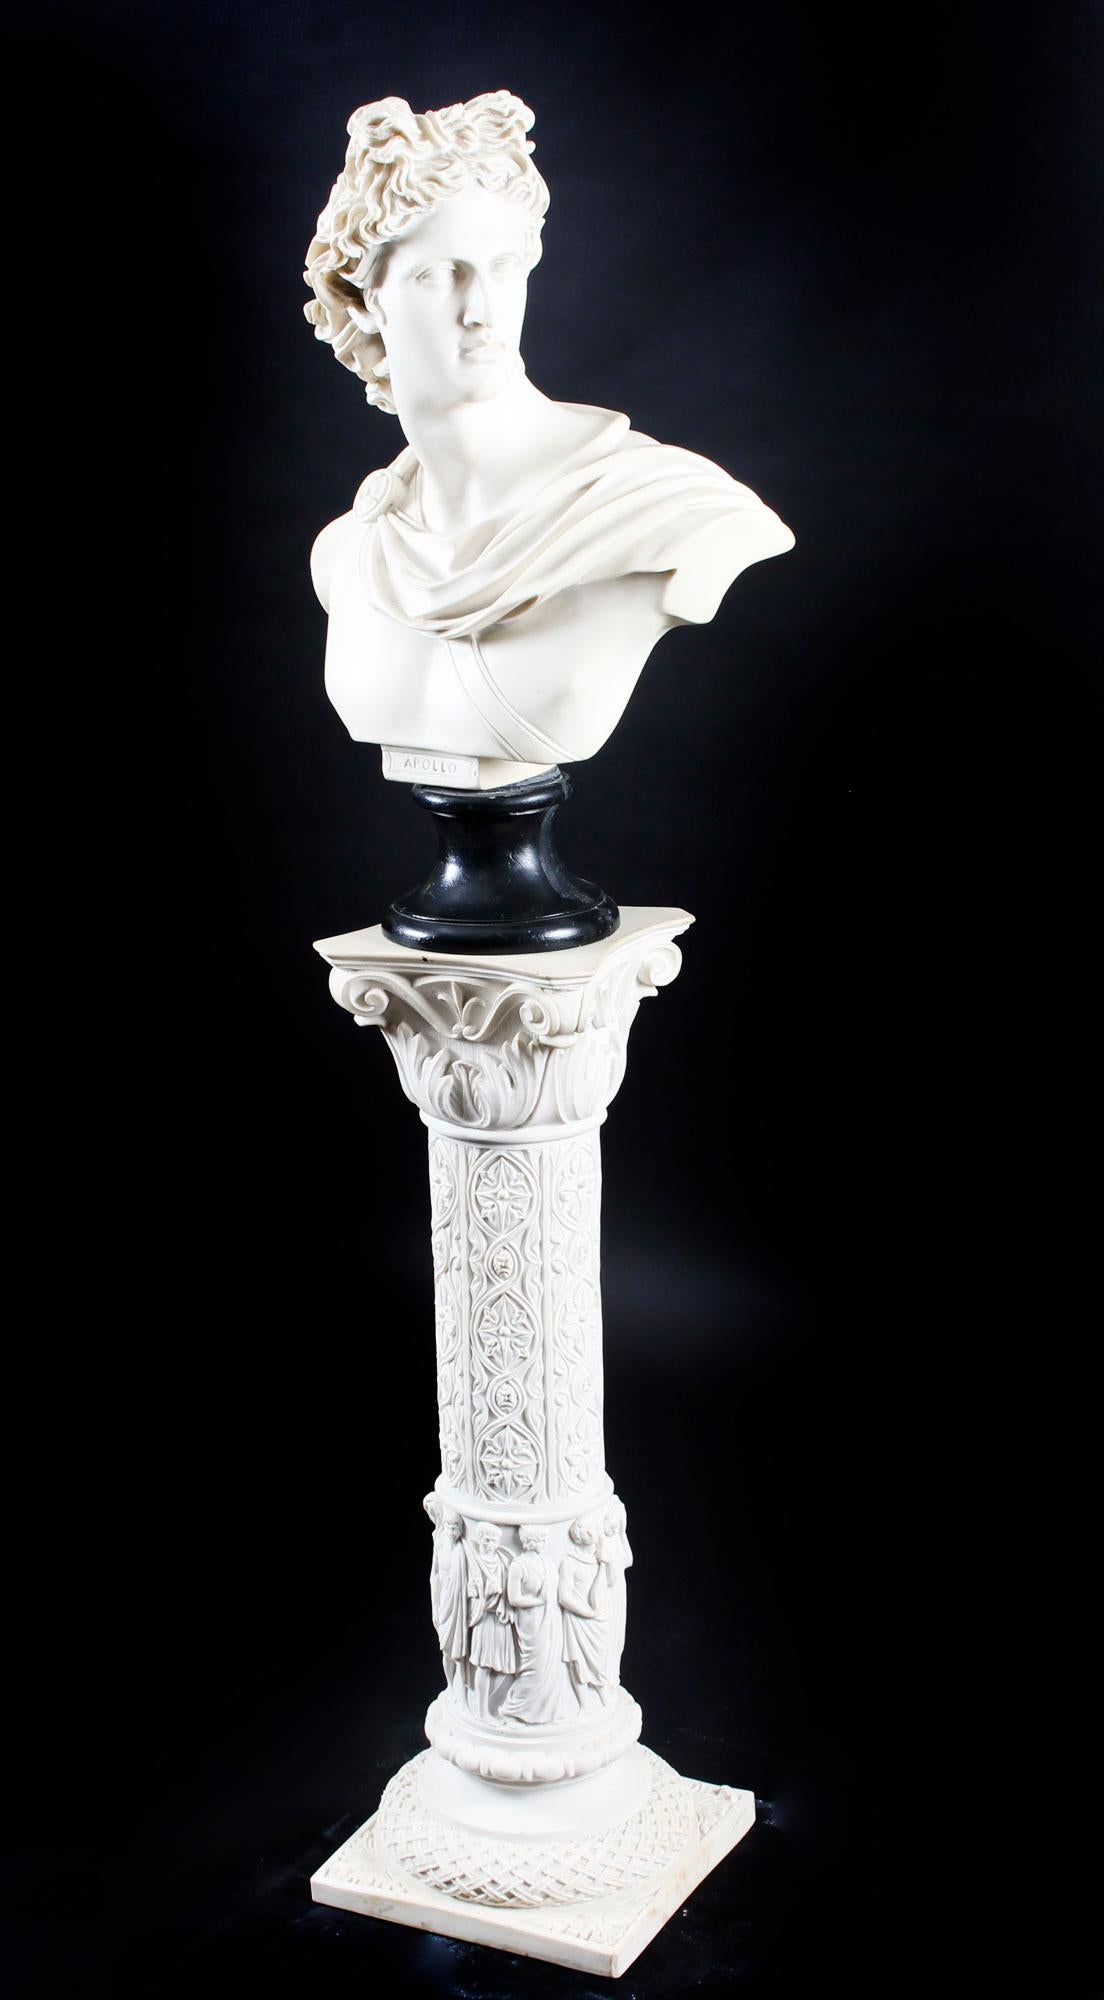 Eine wunderschön geschnitzte Marmorbüste des berühmten griechischen Gottes Apollo, auf dem originalen fabelhaften dekorativen Sockel aus der Mitte des 20. Jahrhunderts.

Die Detailgenauigkeit des Stücks ist unübertroffen und die Figur ist äußerst